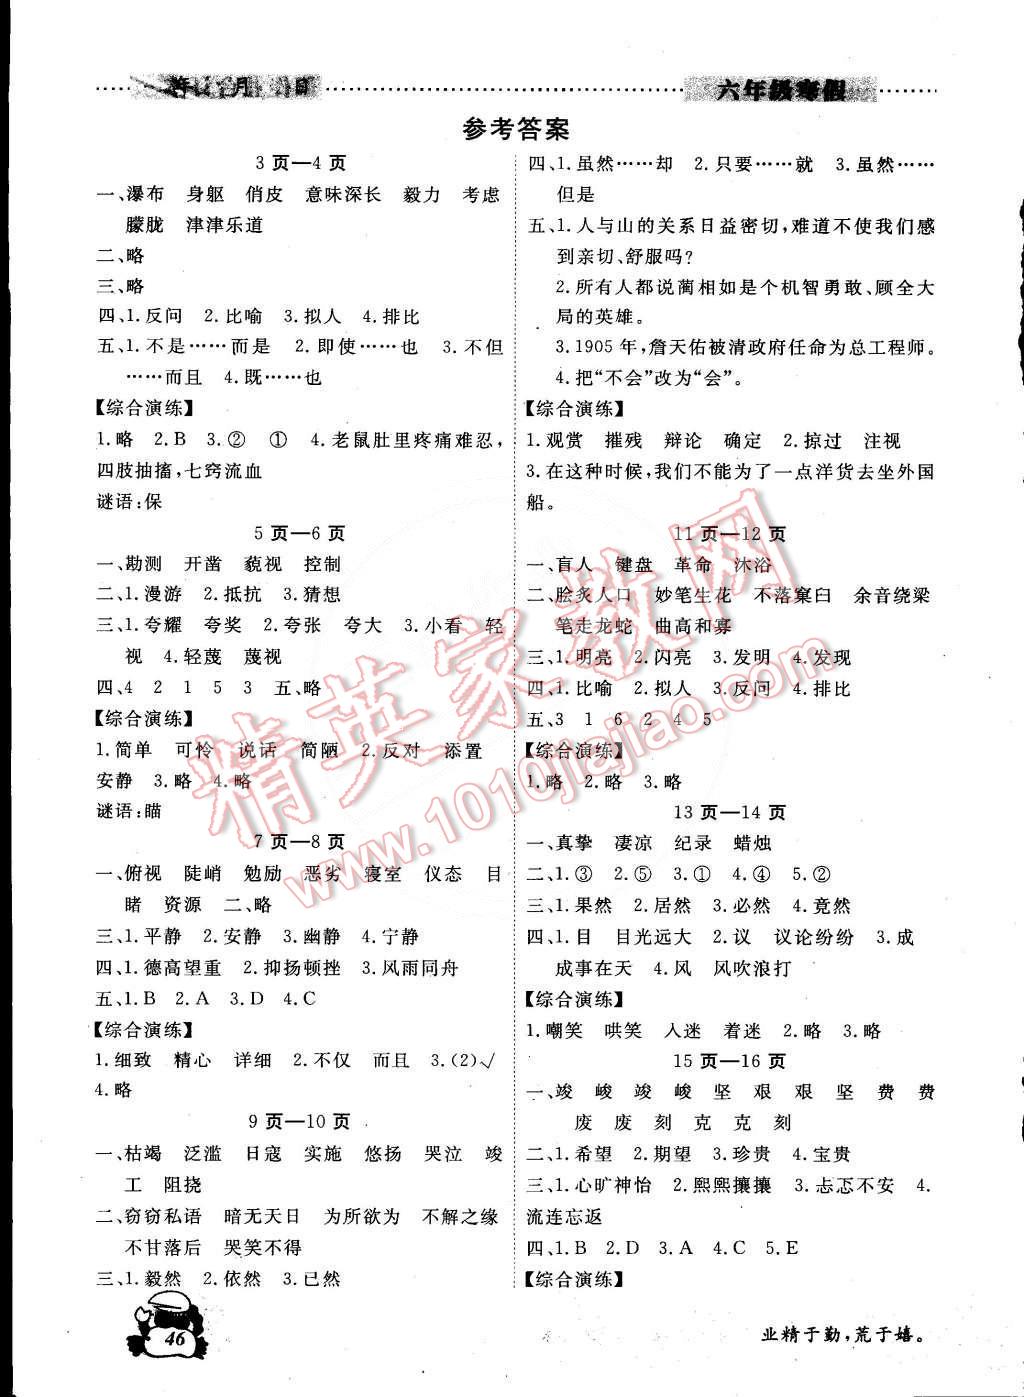 2015年学新教辅寒假作业六年级合订本广州出版社 第1页